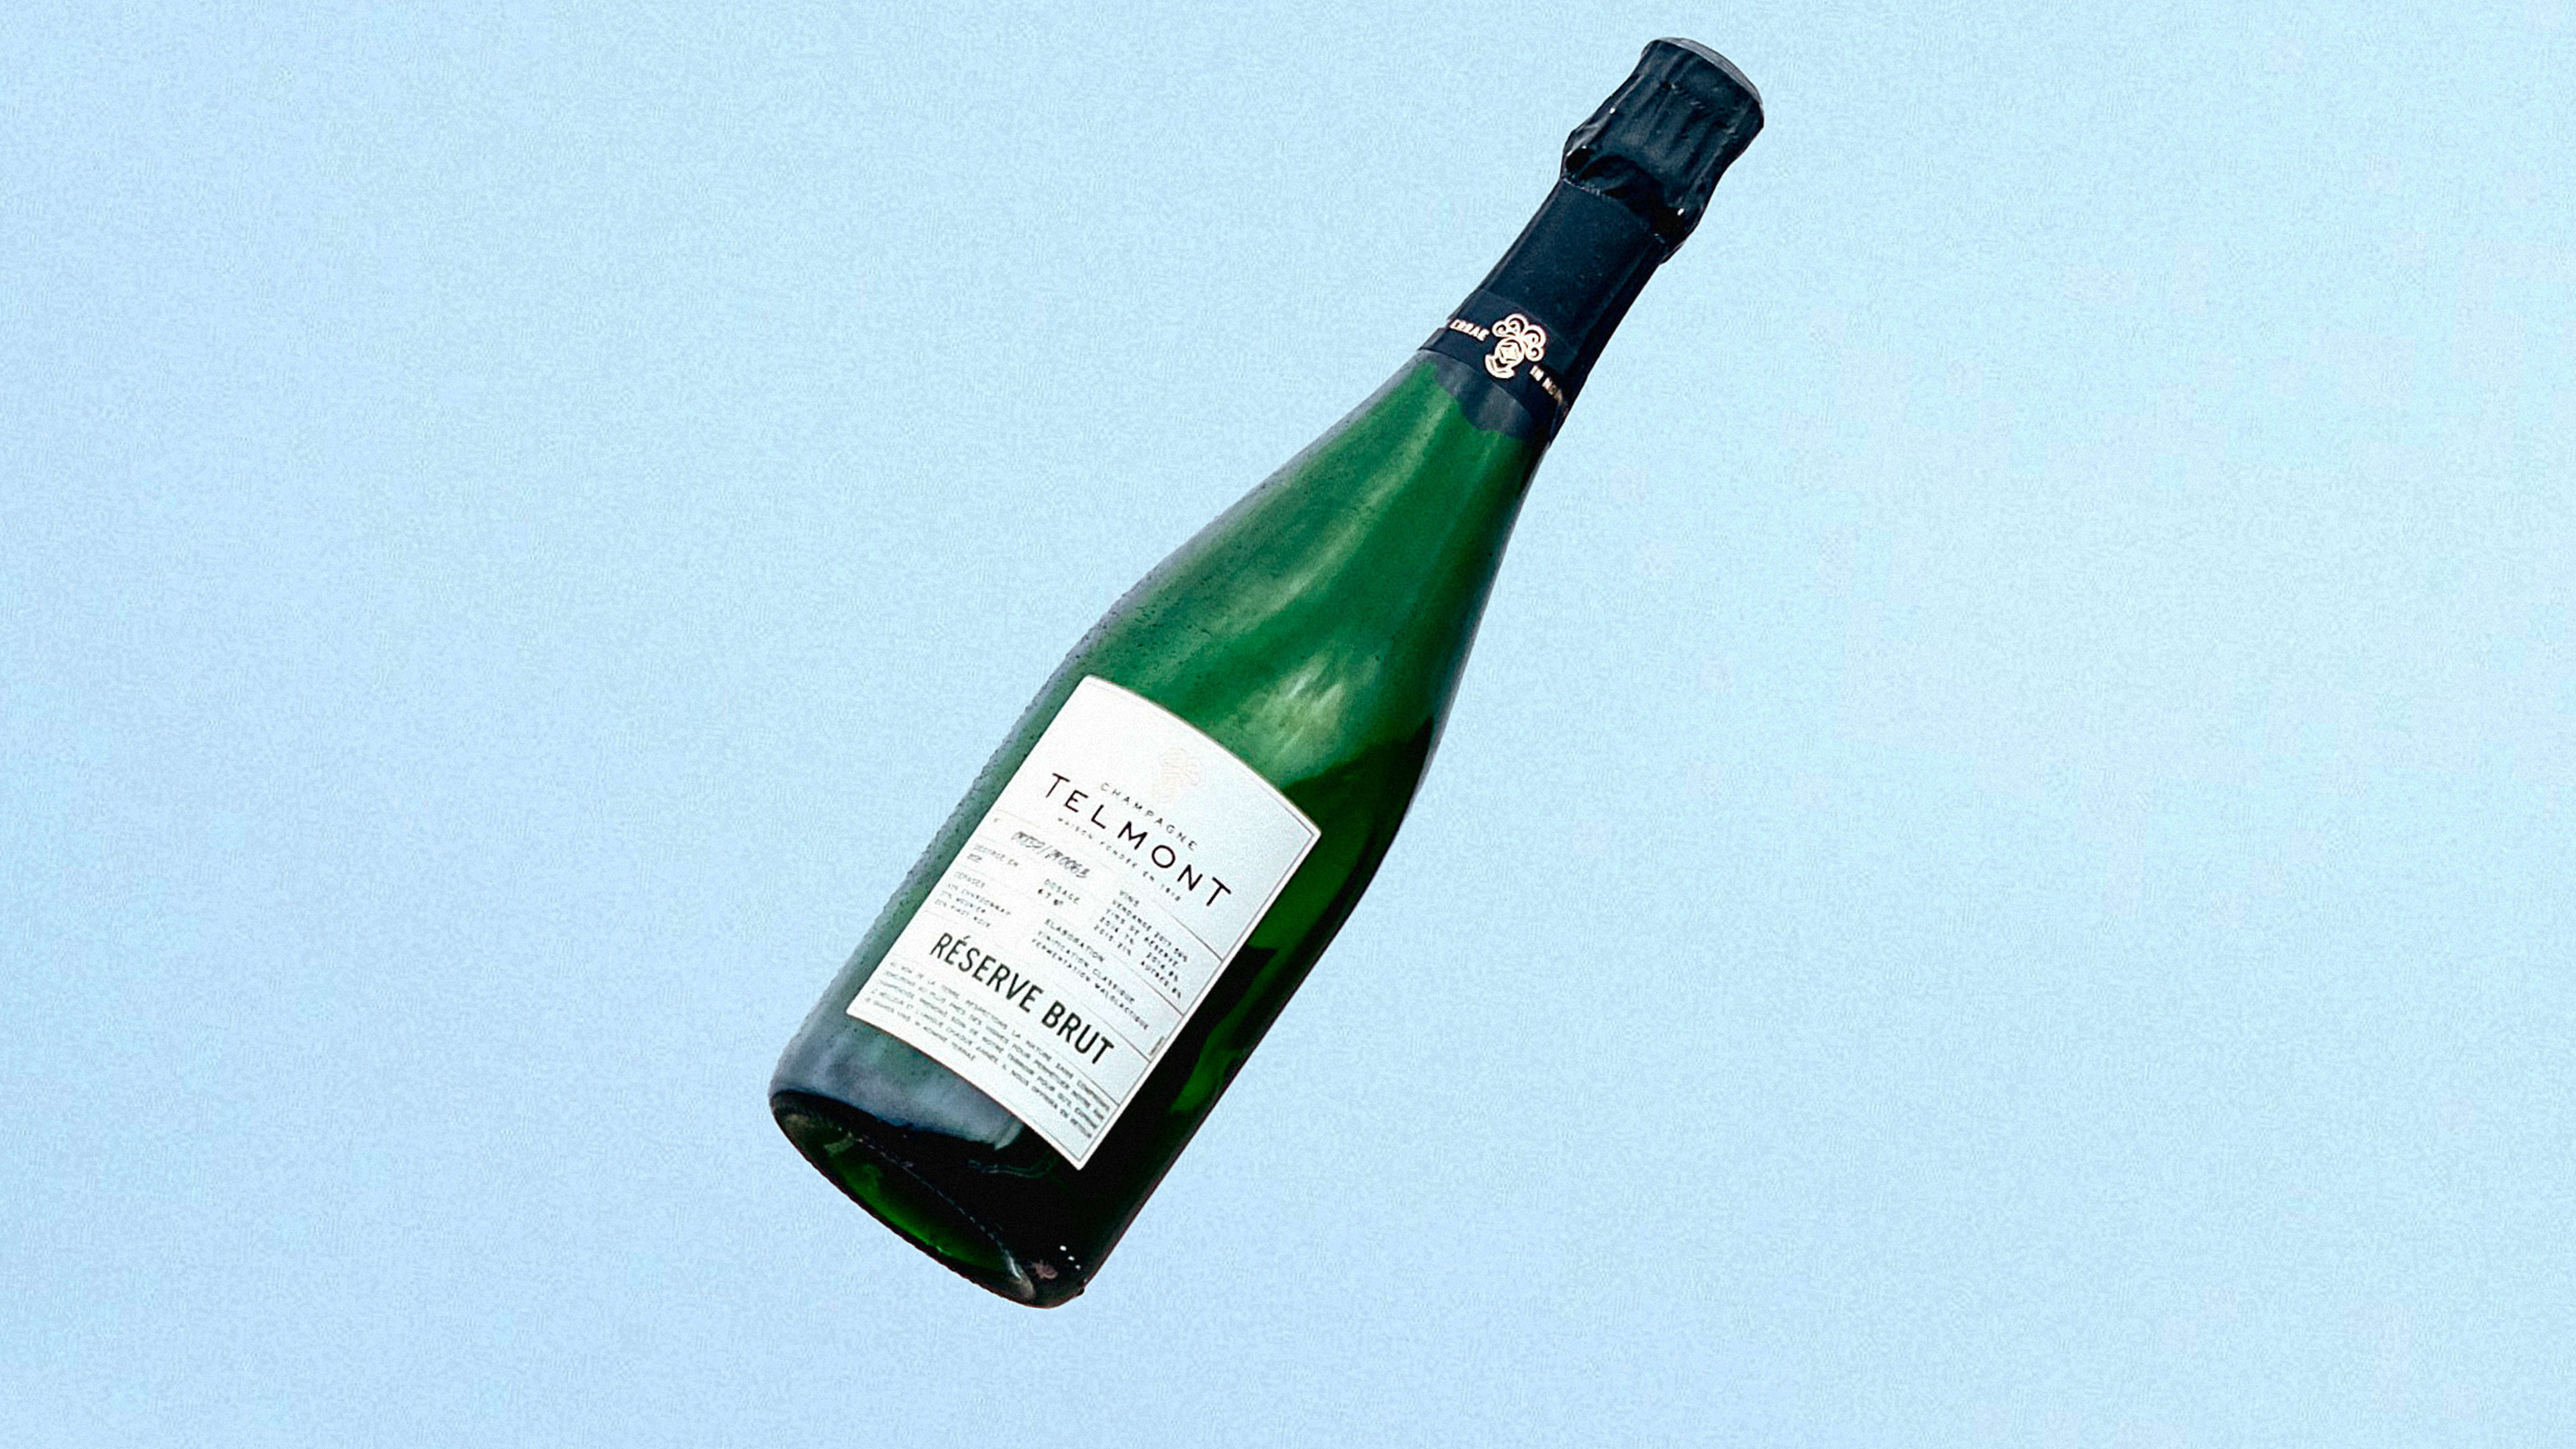 Meet the world’s lightest champagne bottle